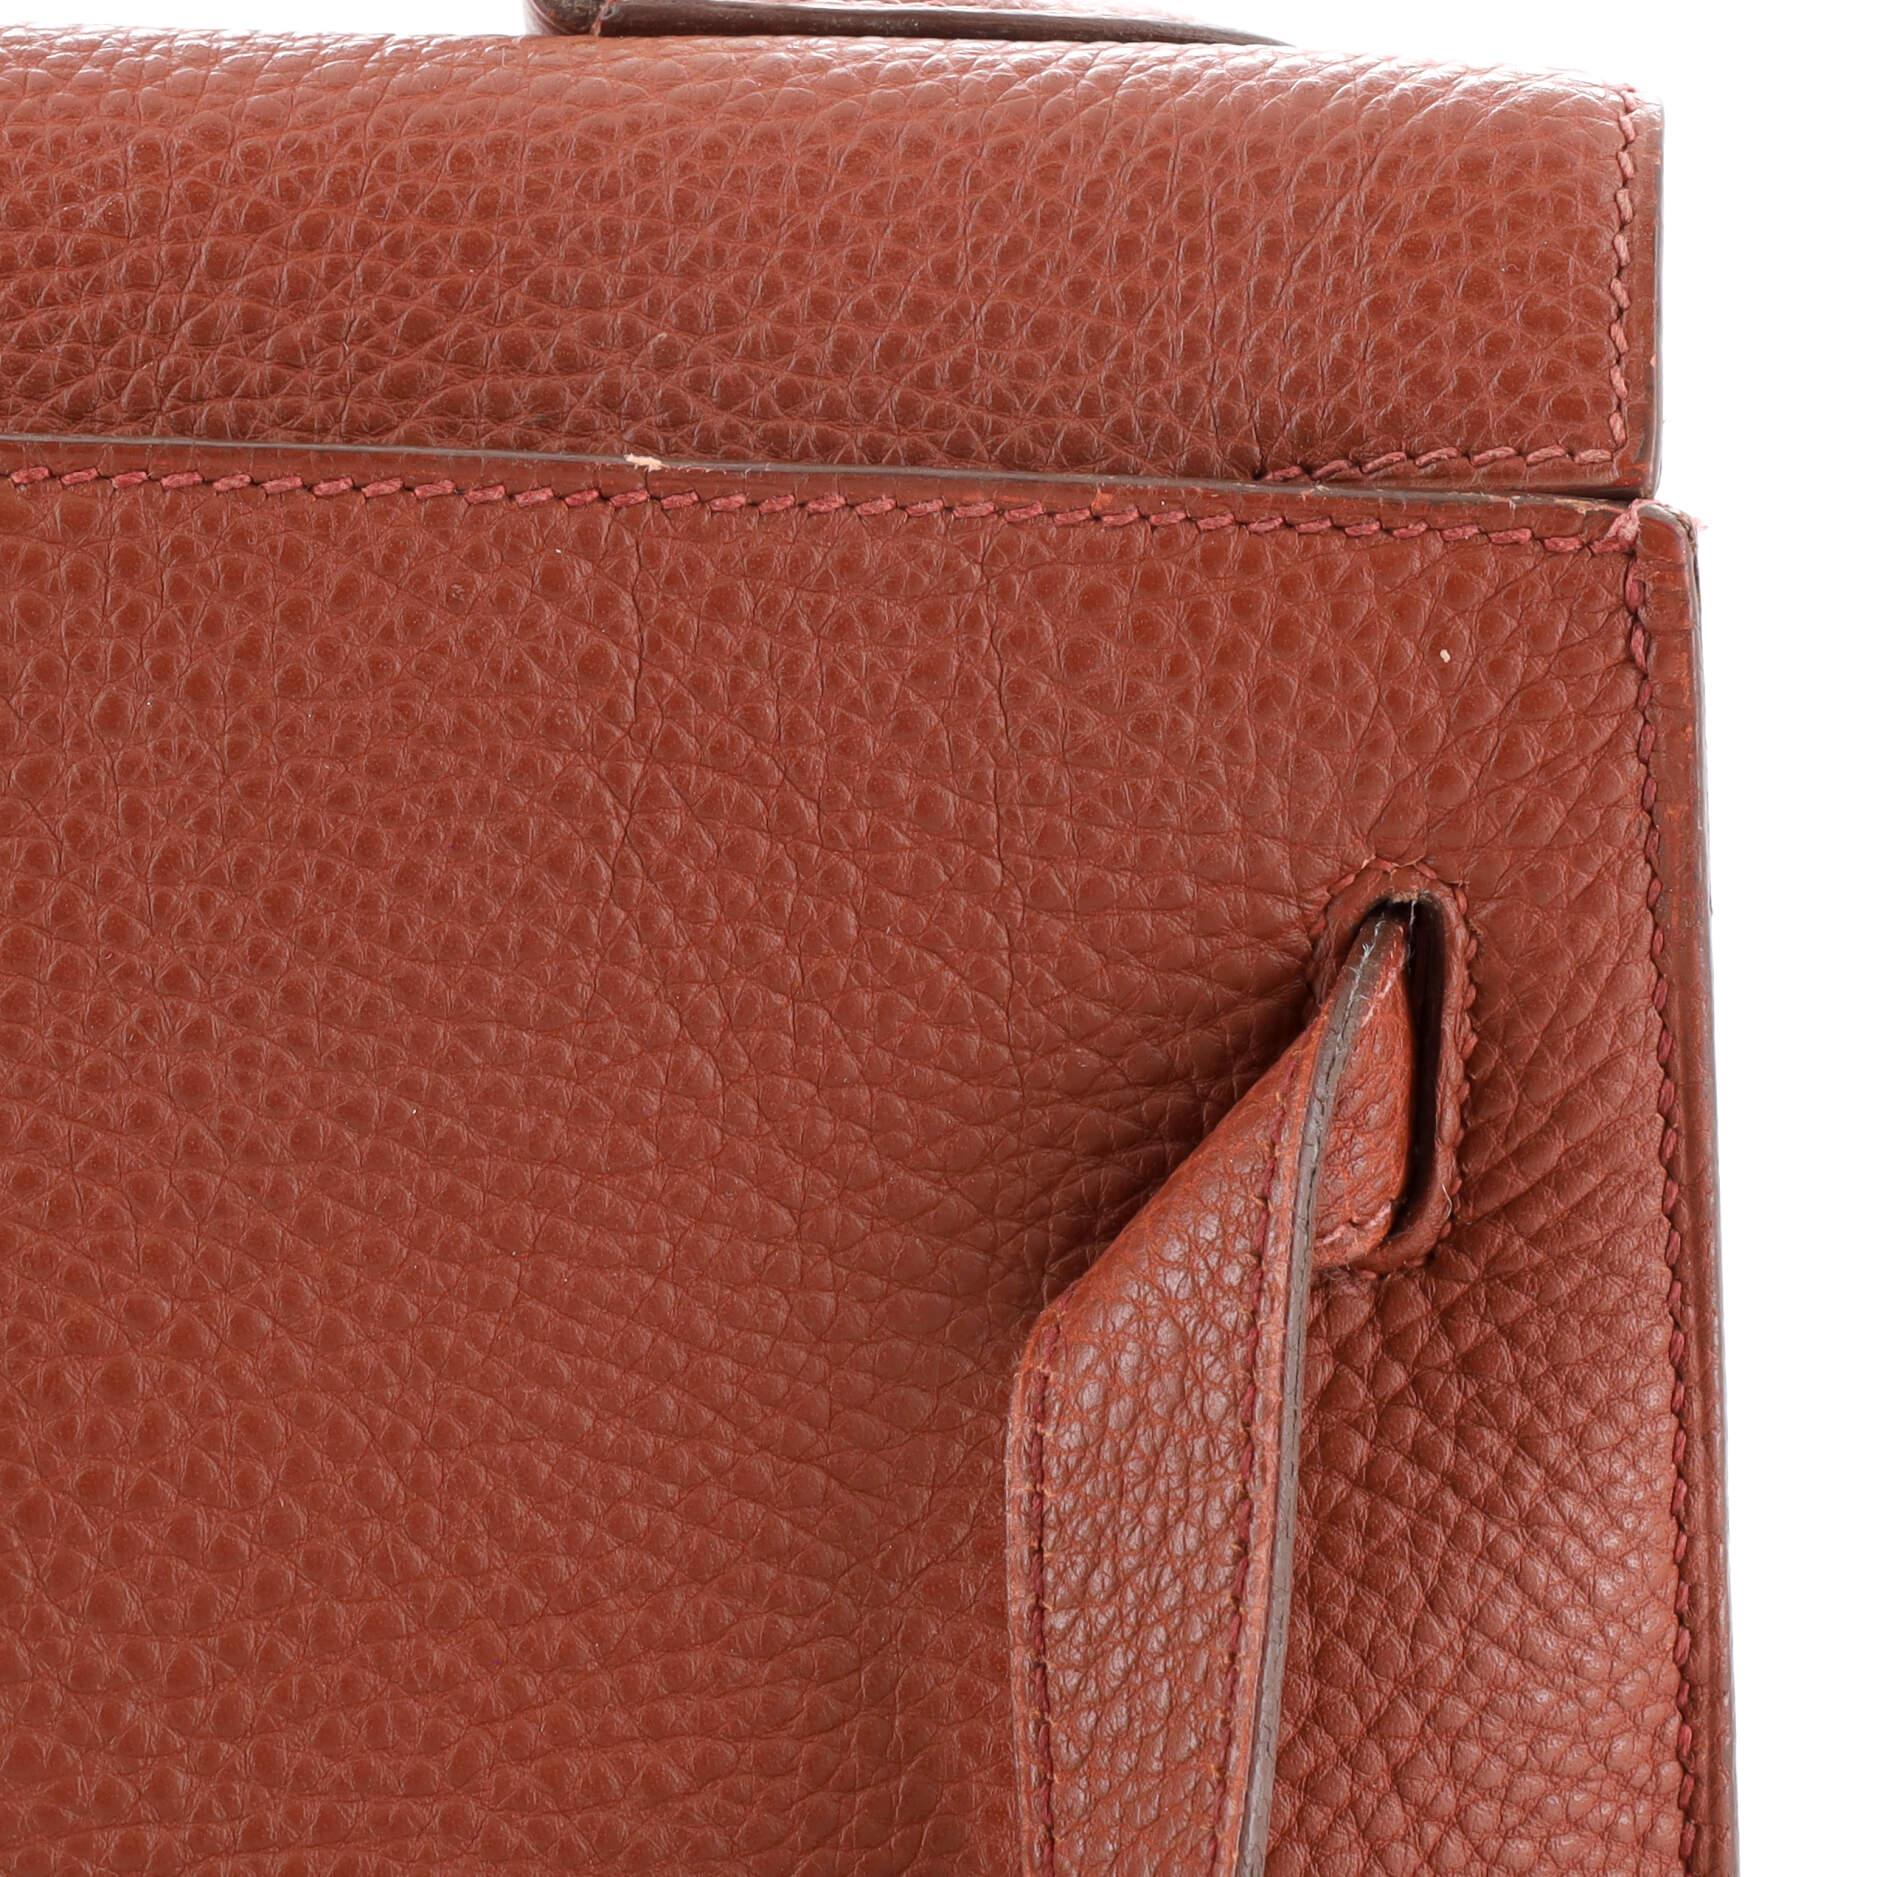 Hermes Kelly Handbag Sienne Togo with Gold Hardware 32 4